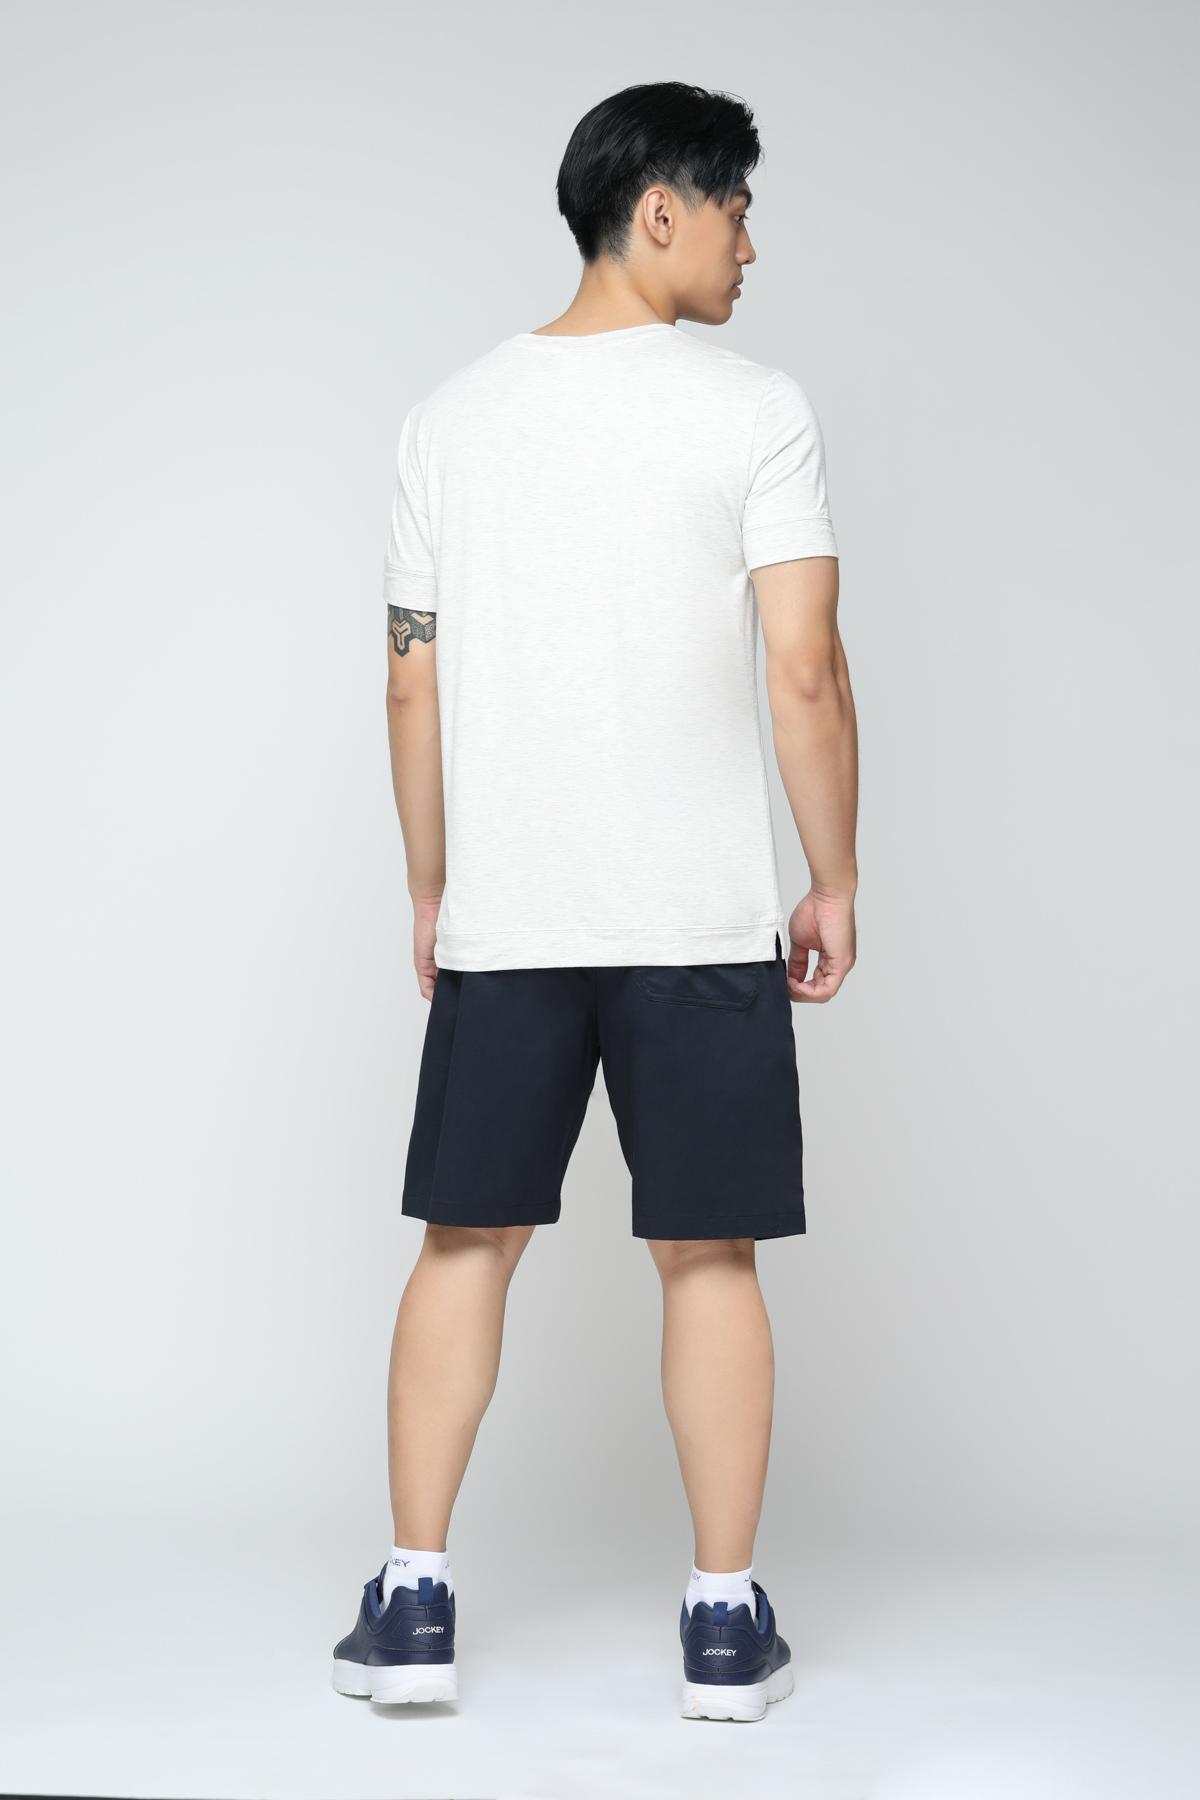 Áo T-Shirt nam Jockey tay ngắn chất liệu Visco - 1150